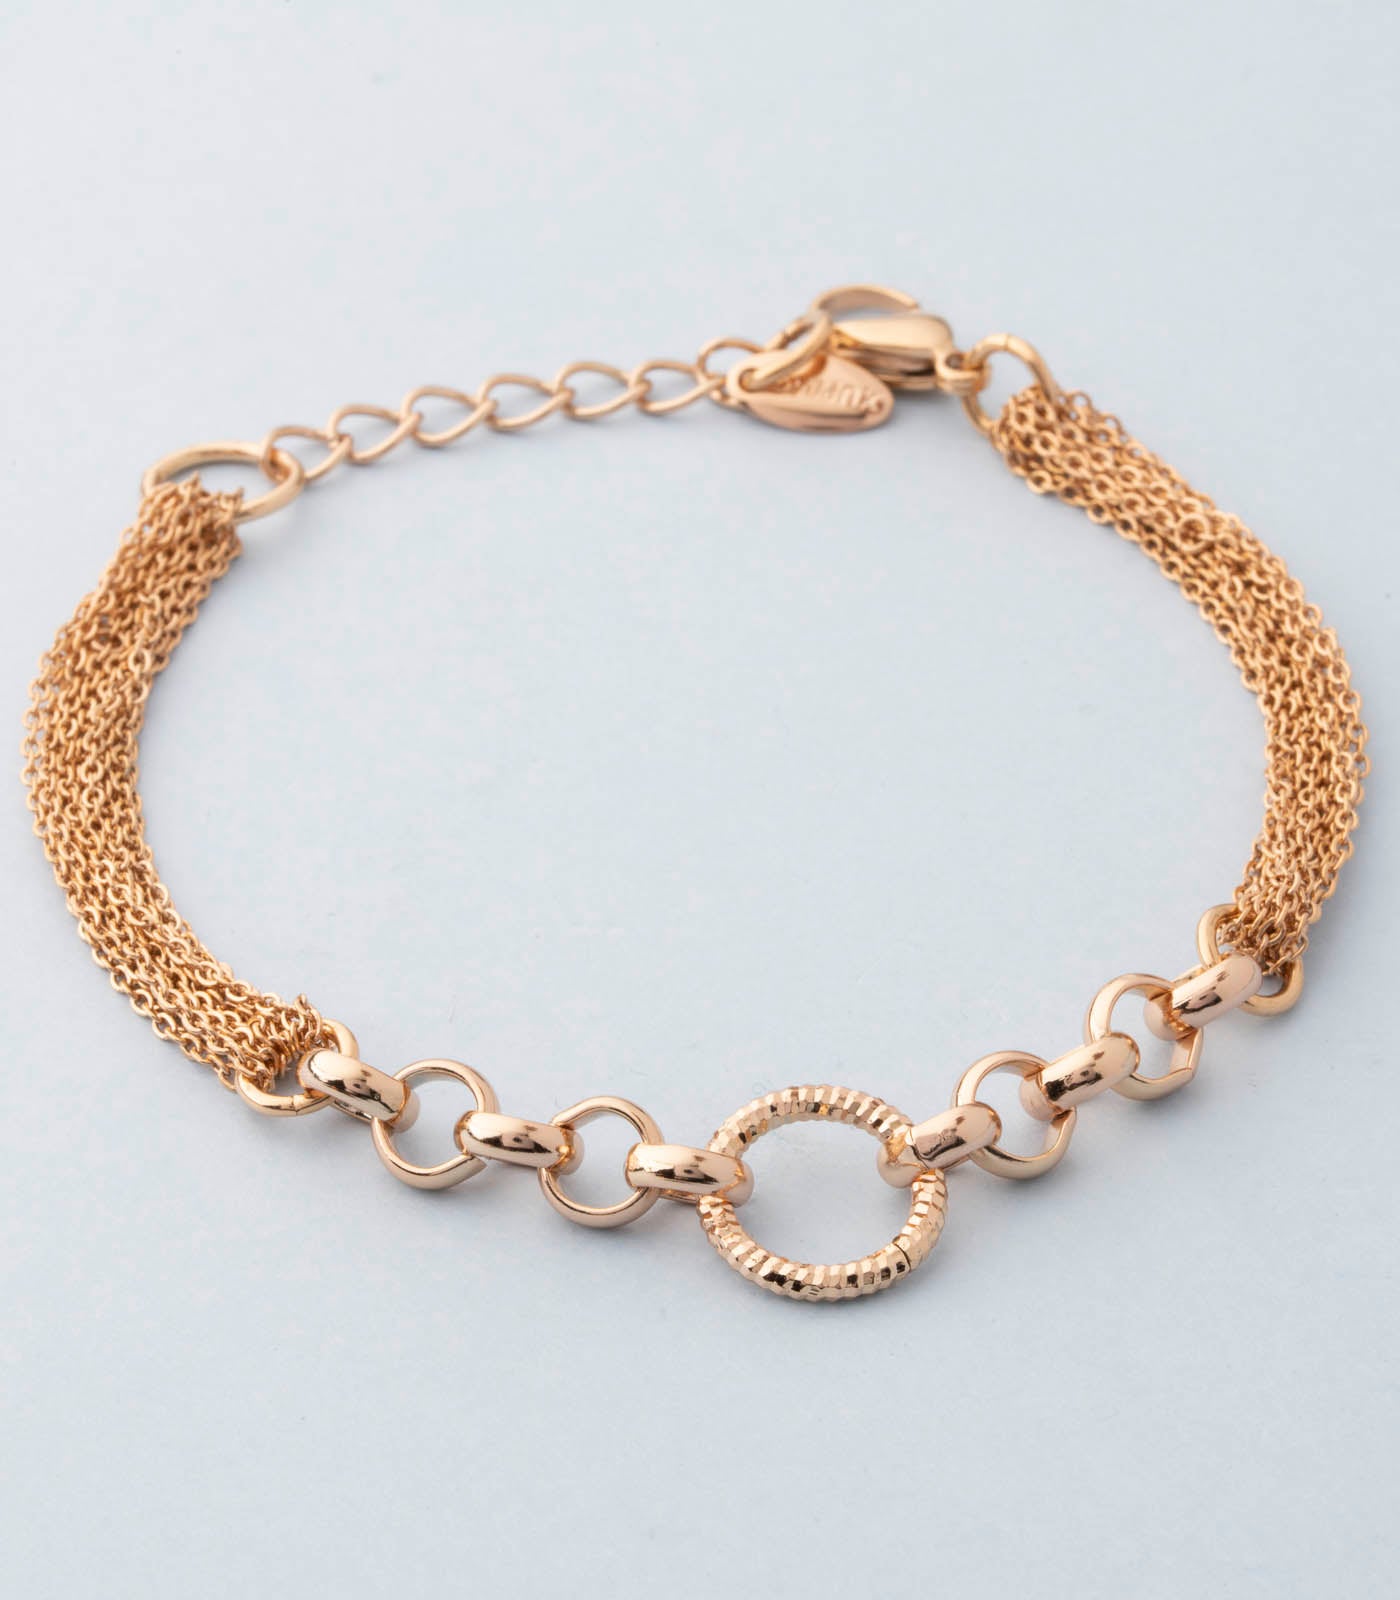 Stylish Guardian bracelet (Brass)